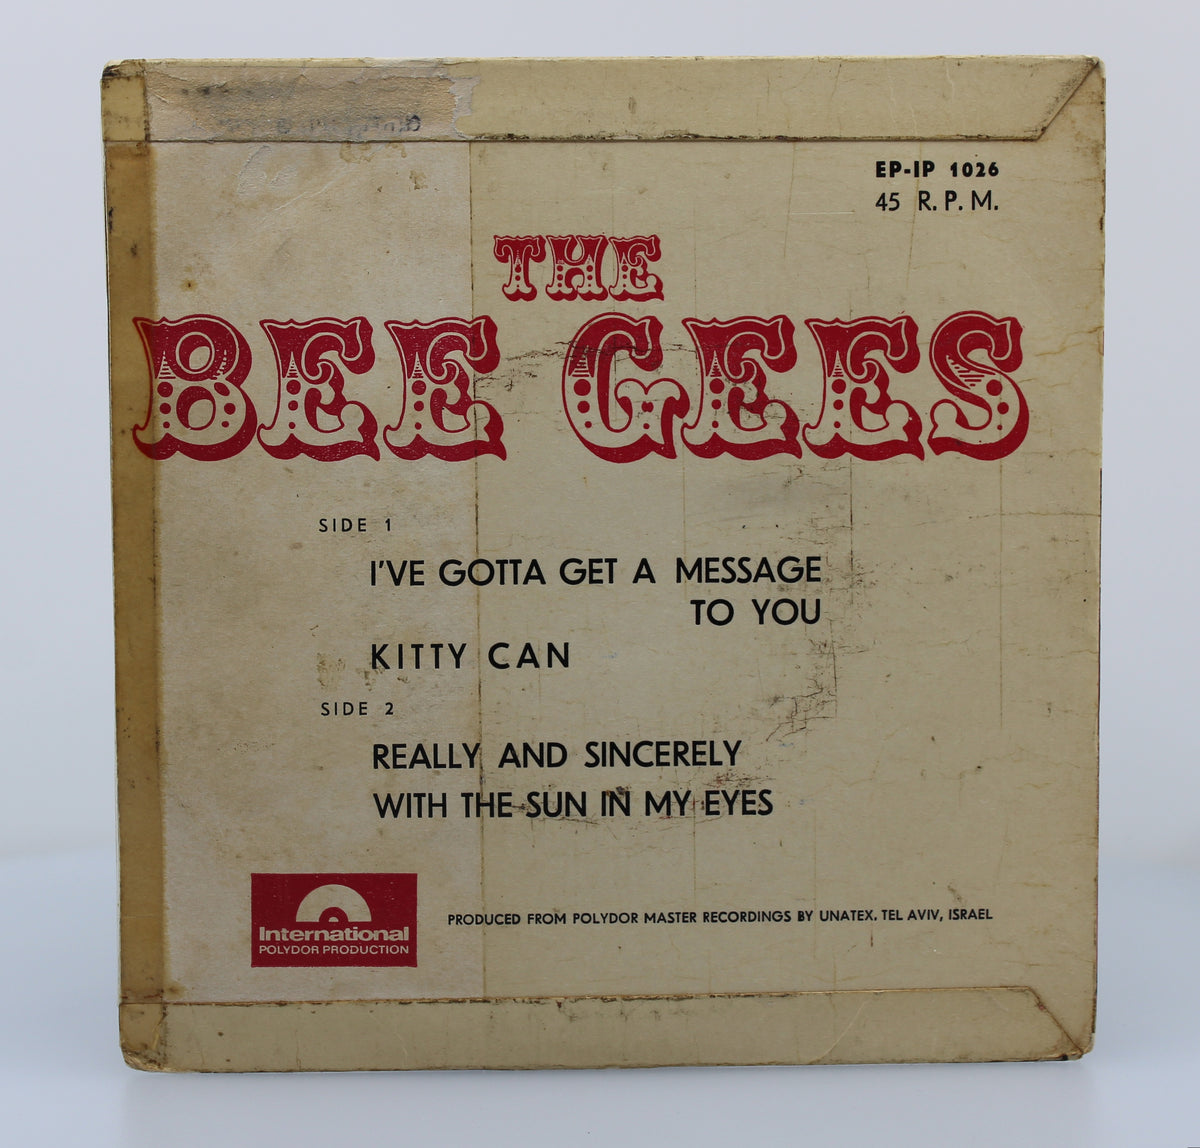 Bee Gees, Vinyl Single (45rpm), Israel